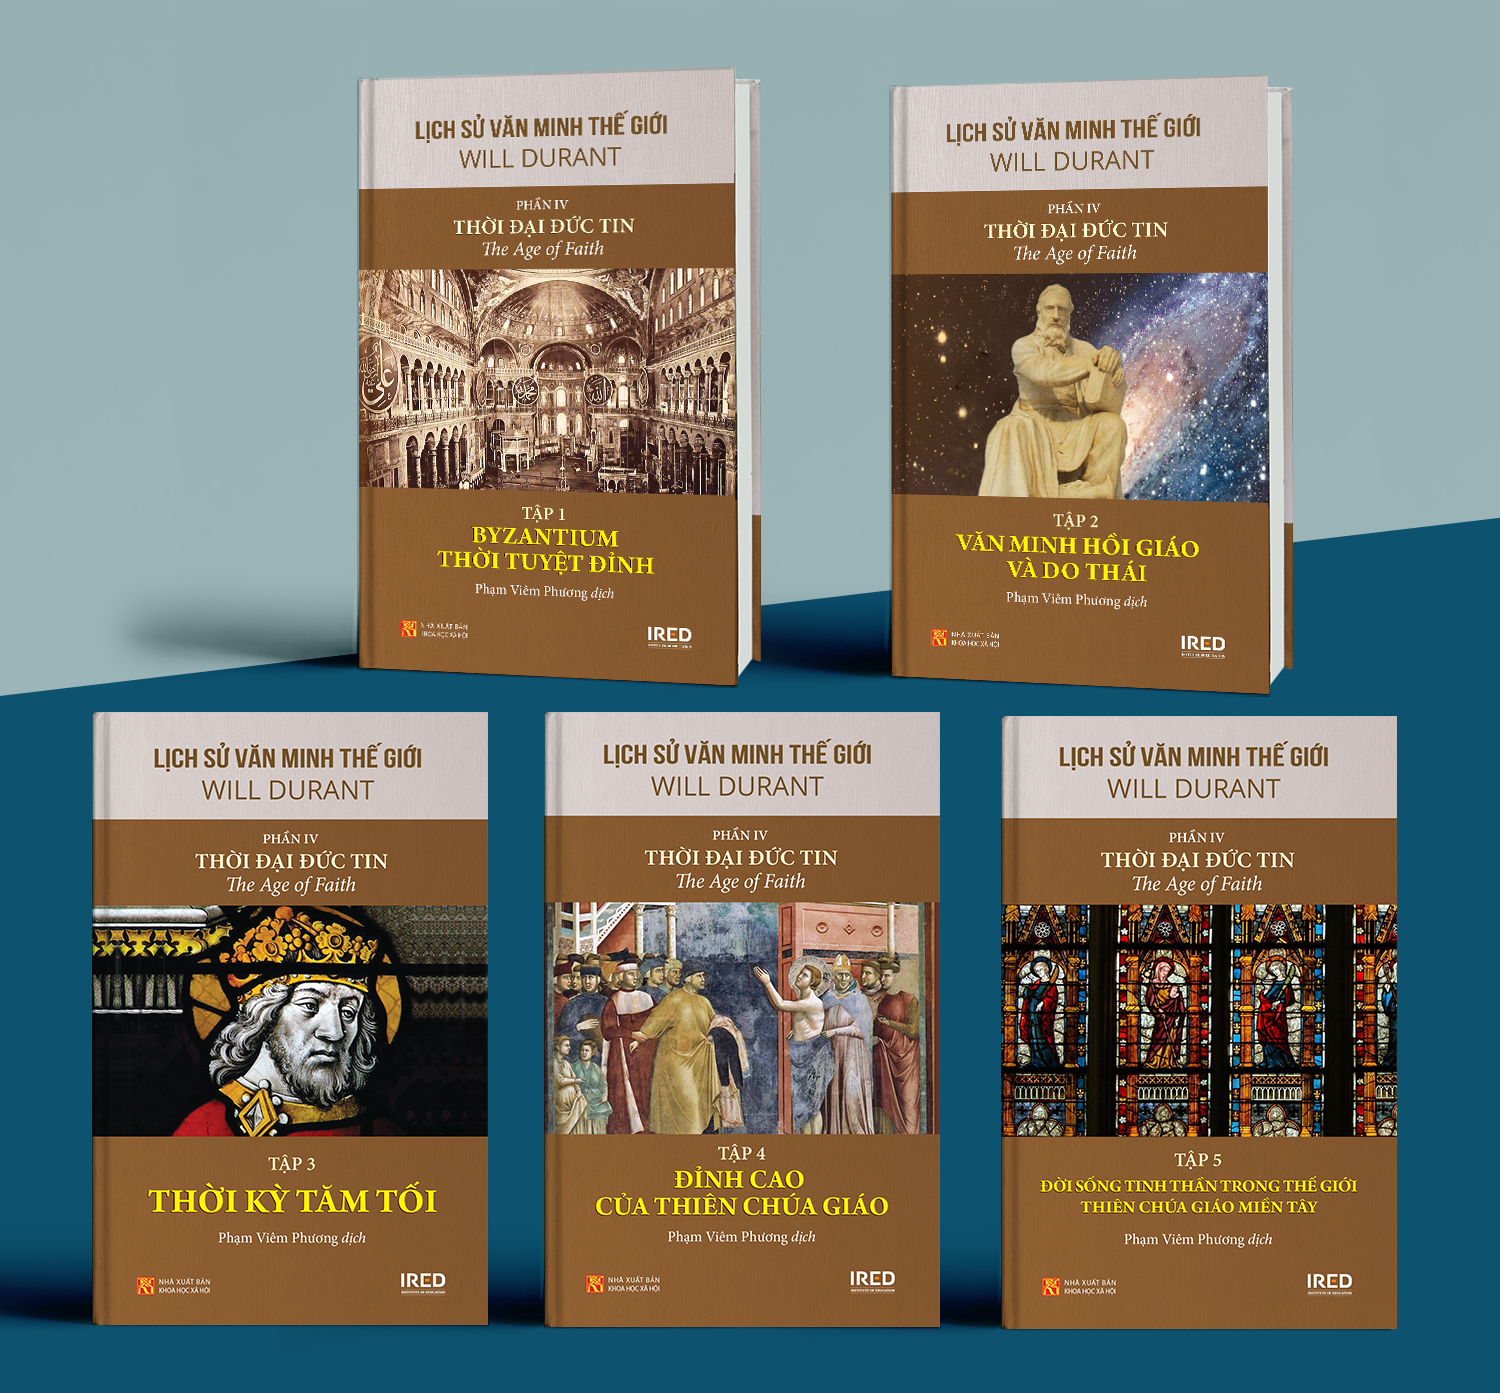 Sách IRED Books - Lịch sử văn minh thế giới phần 4 : Thời đại Đức Tin - The Age of Faith, tập 5: Đời sống tinh thần trong thế giới Thiên Chúa giáo miền Tây - Will Durant